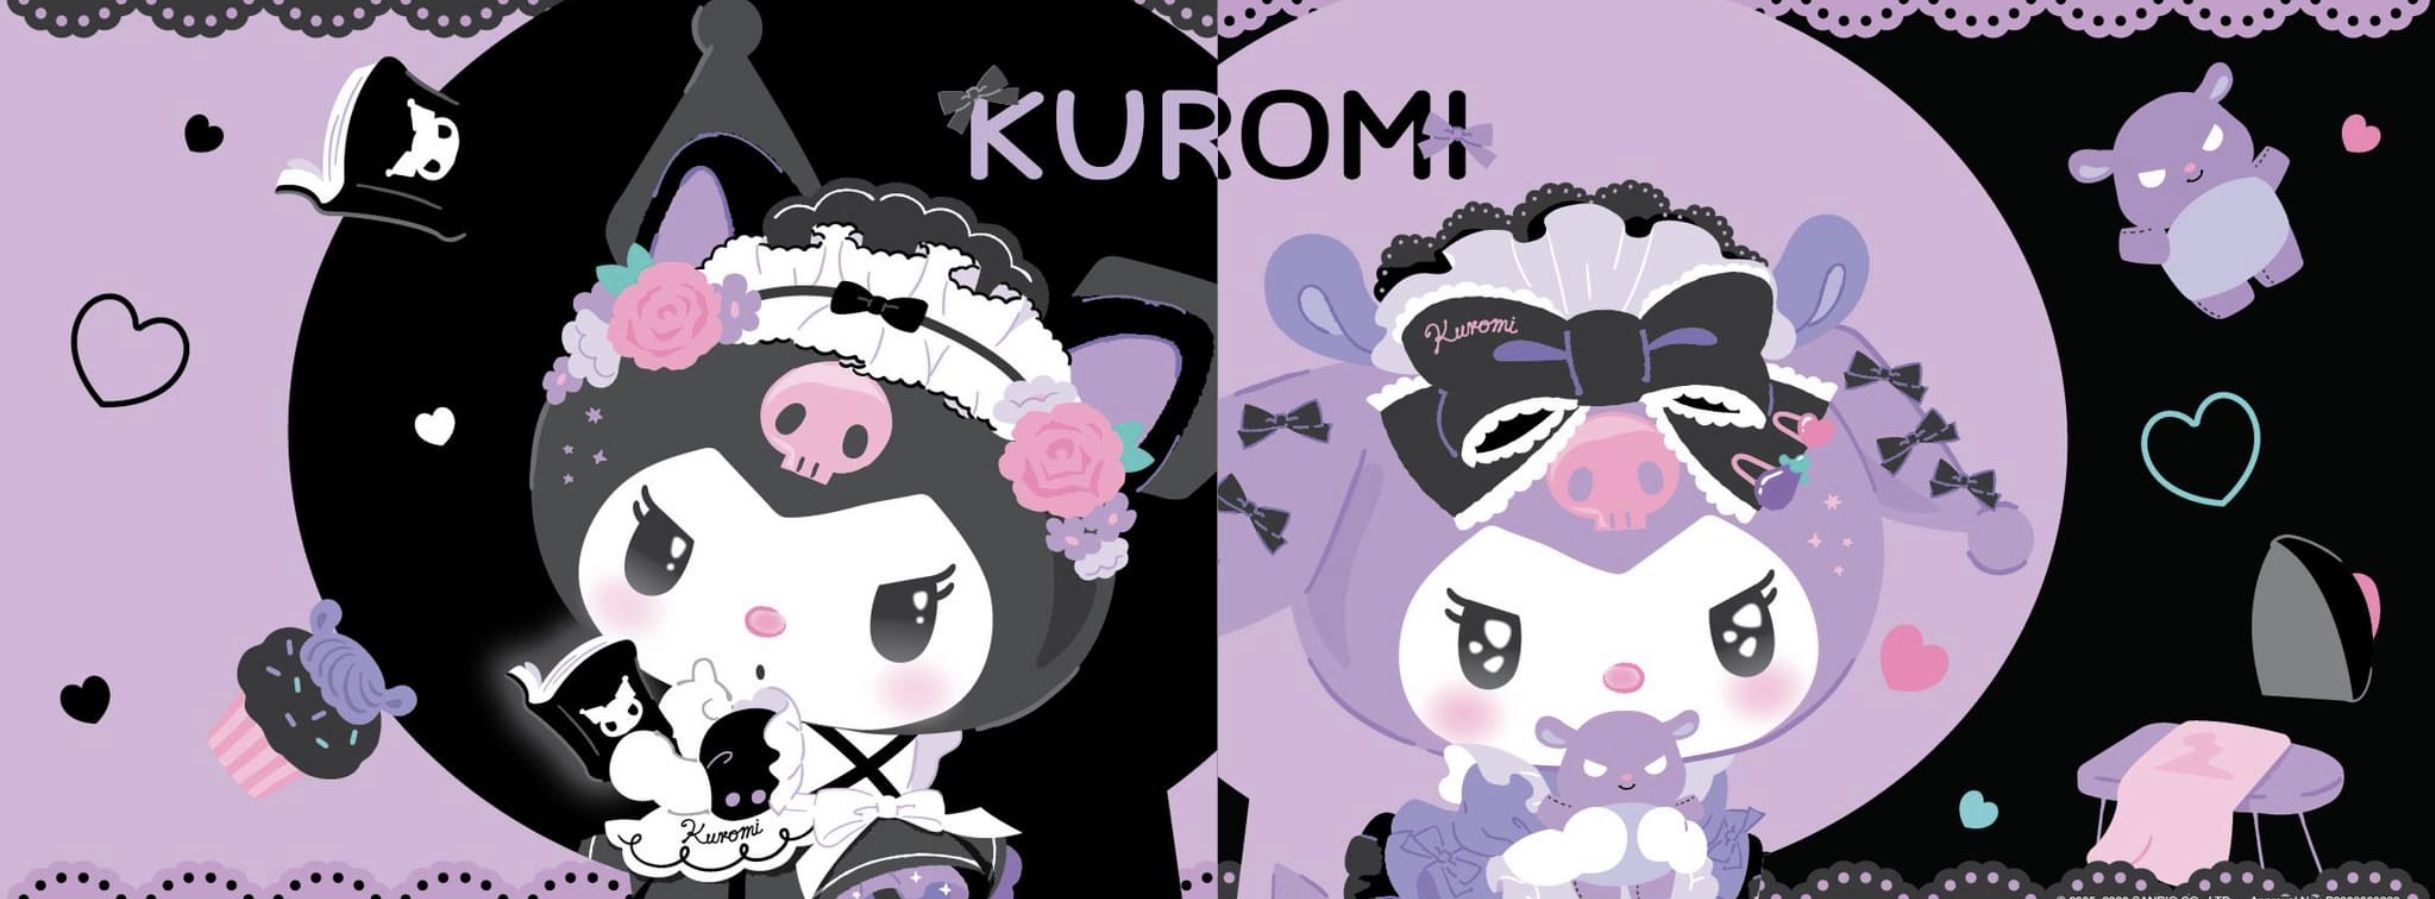 Kuromi. Hello kitty iphone wallpaper, Hello kitty wallpaper hd, Cute wallpaper for computer